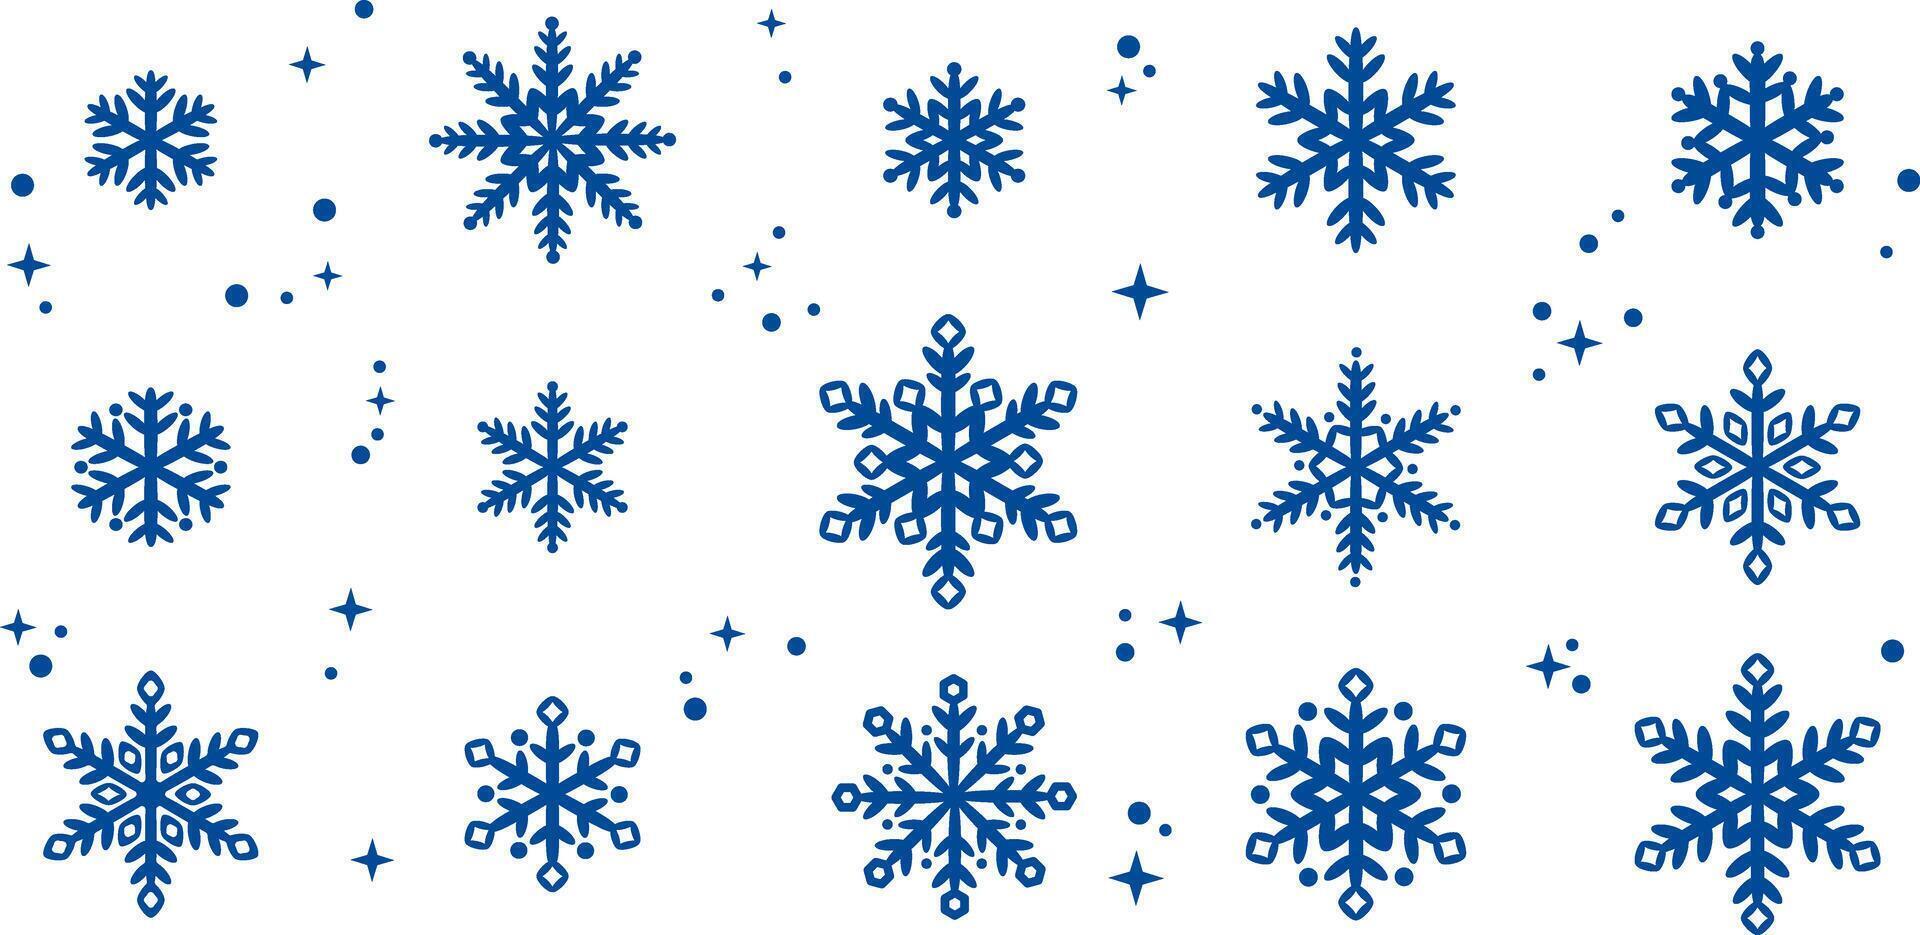 bleu flocon de neige vecteur agrafe art illustration pour hiver fête avec étoiles, élégant main tiré éléments, isolé